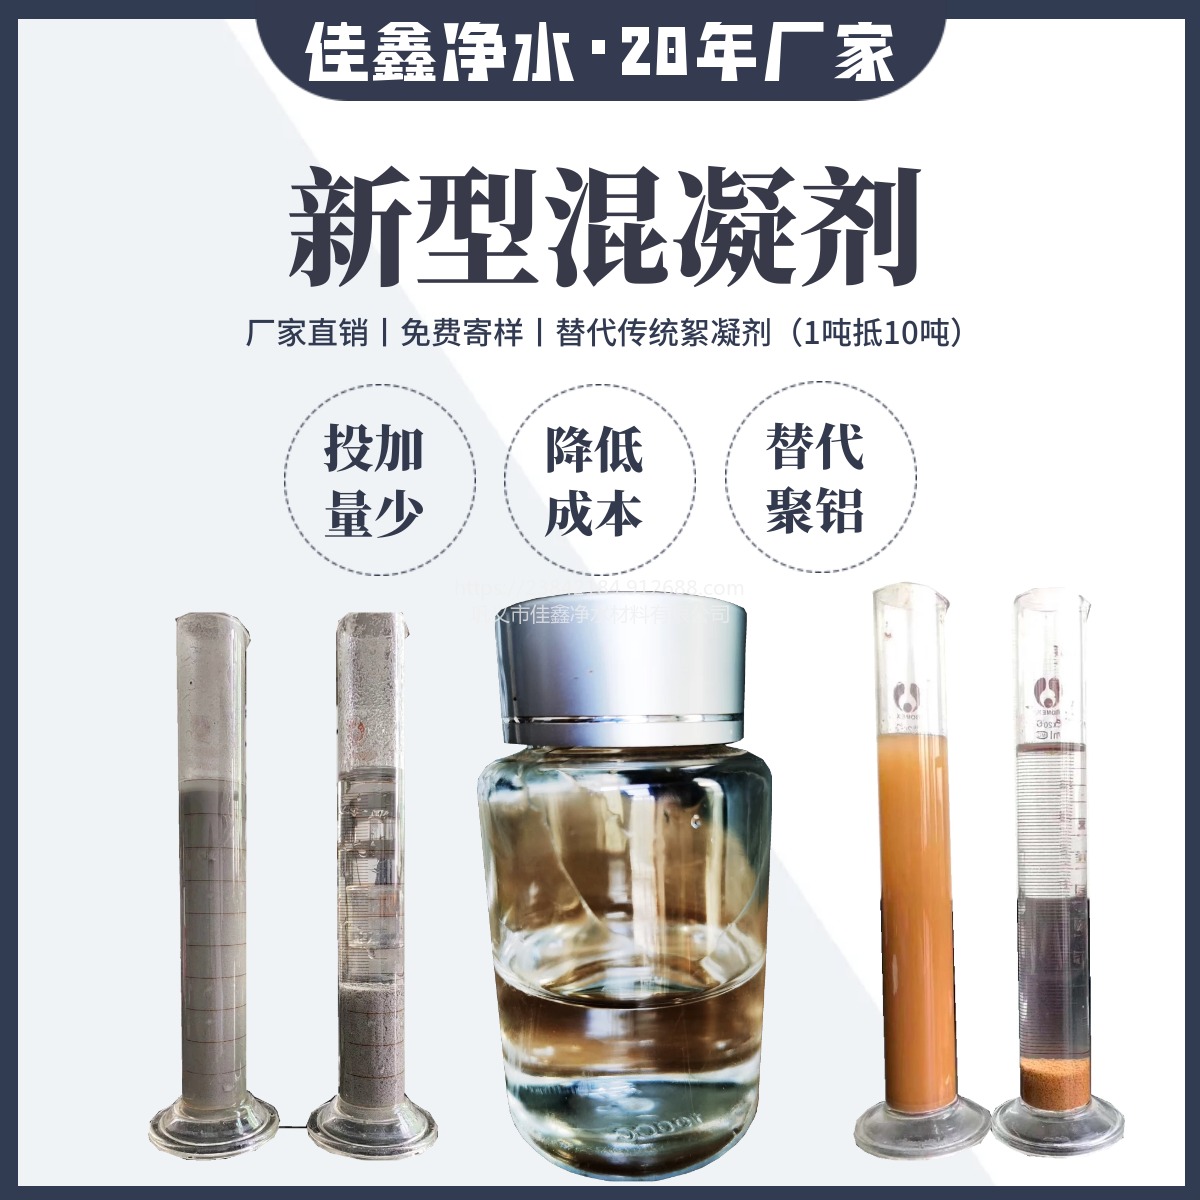 液体混凝剂 佳鑫新型液体混凝剂 替代常规铝盐 一吨抵十吨用量